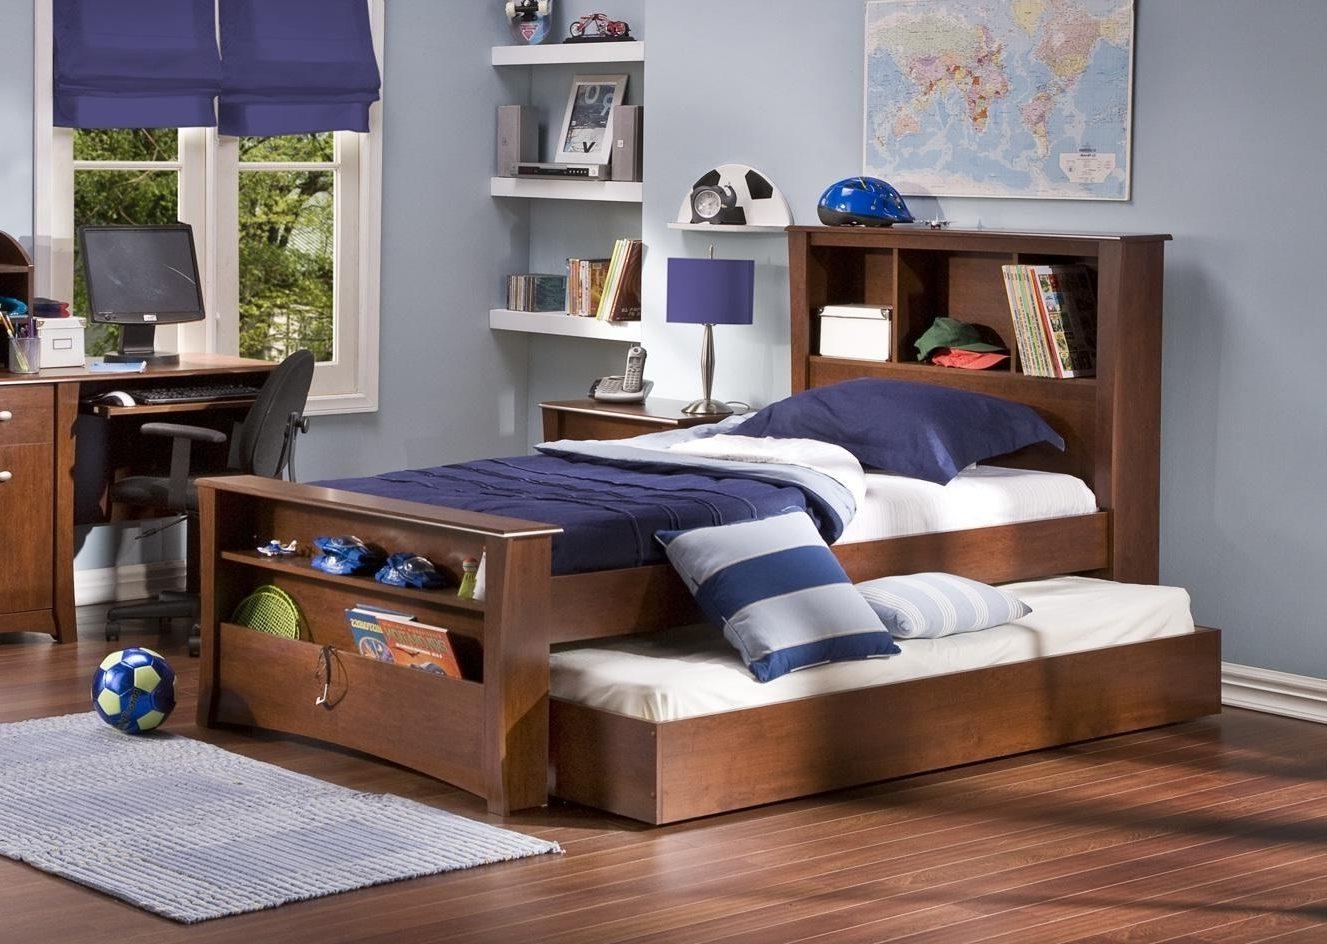 Выдвижная деревянная кровать